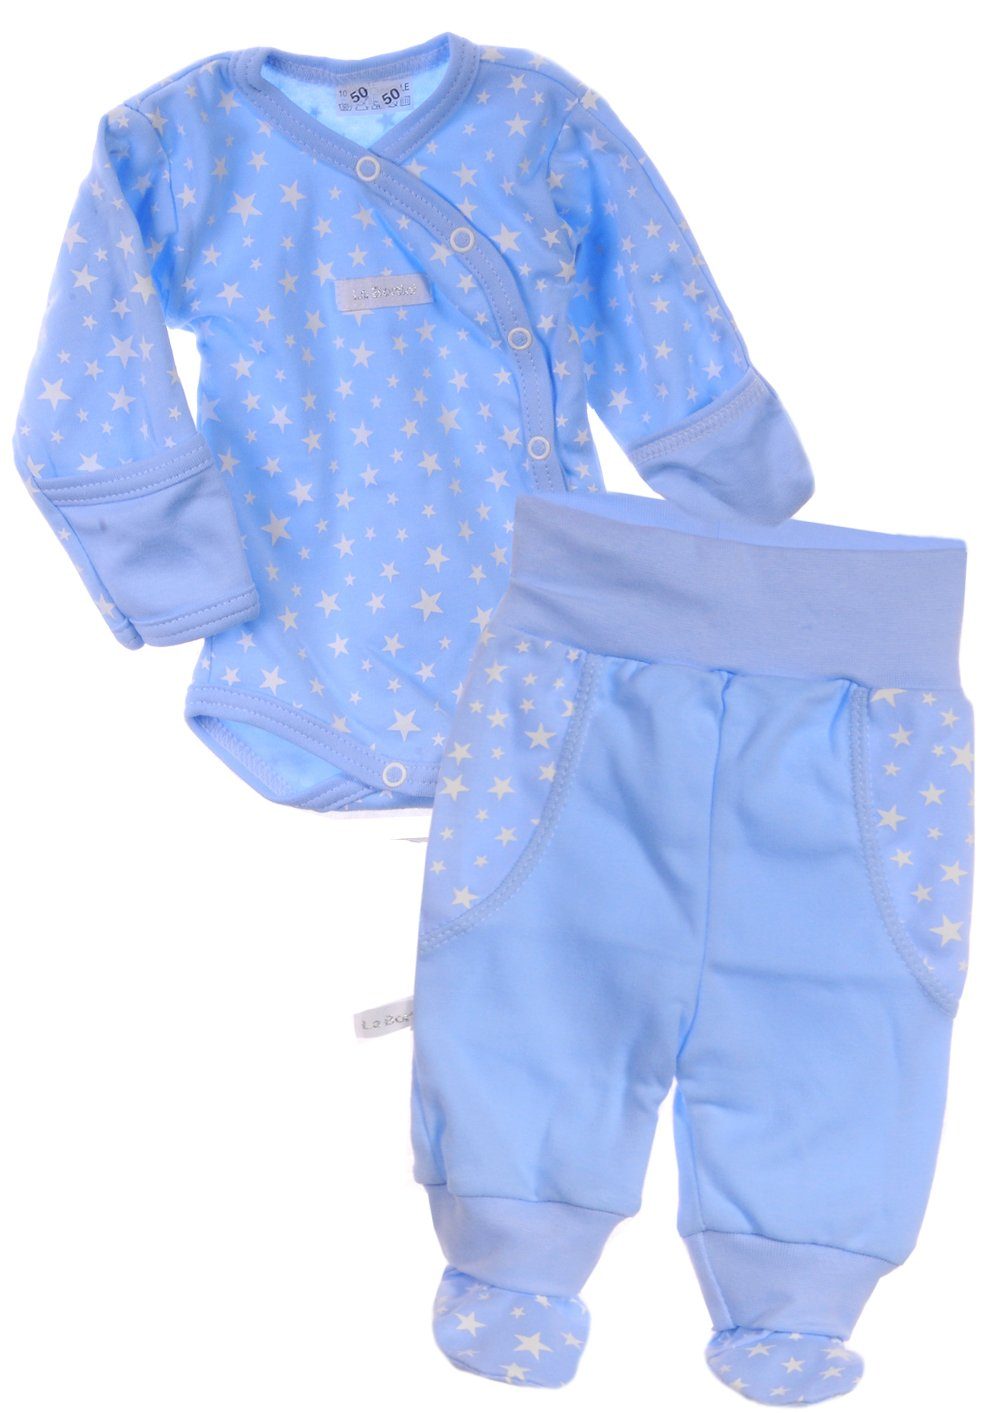 La Bortini Body & Hose Wickelbody und Hose Baby Anzug 2tlg. Set Body 46 50 56 62 68 74 80 aus reiner Baumwolle